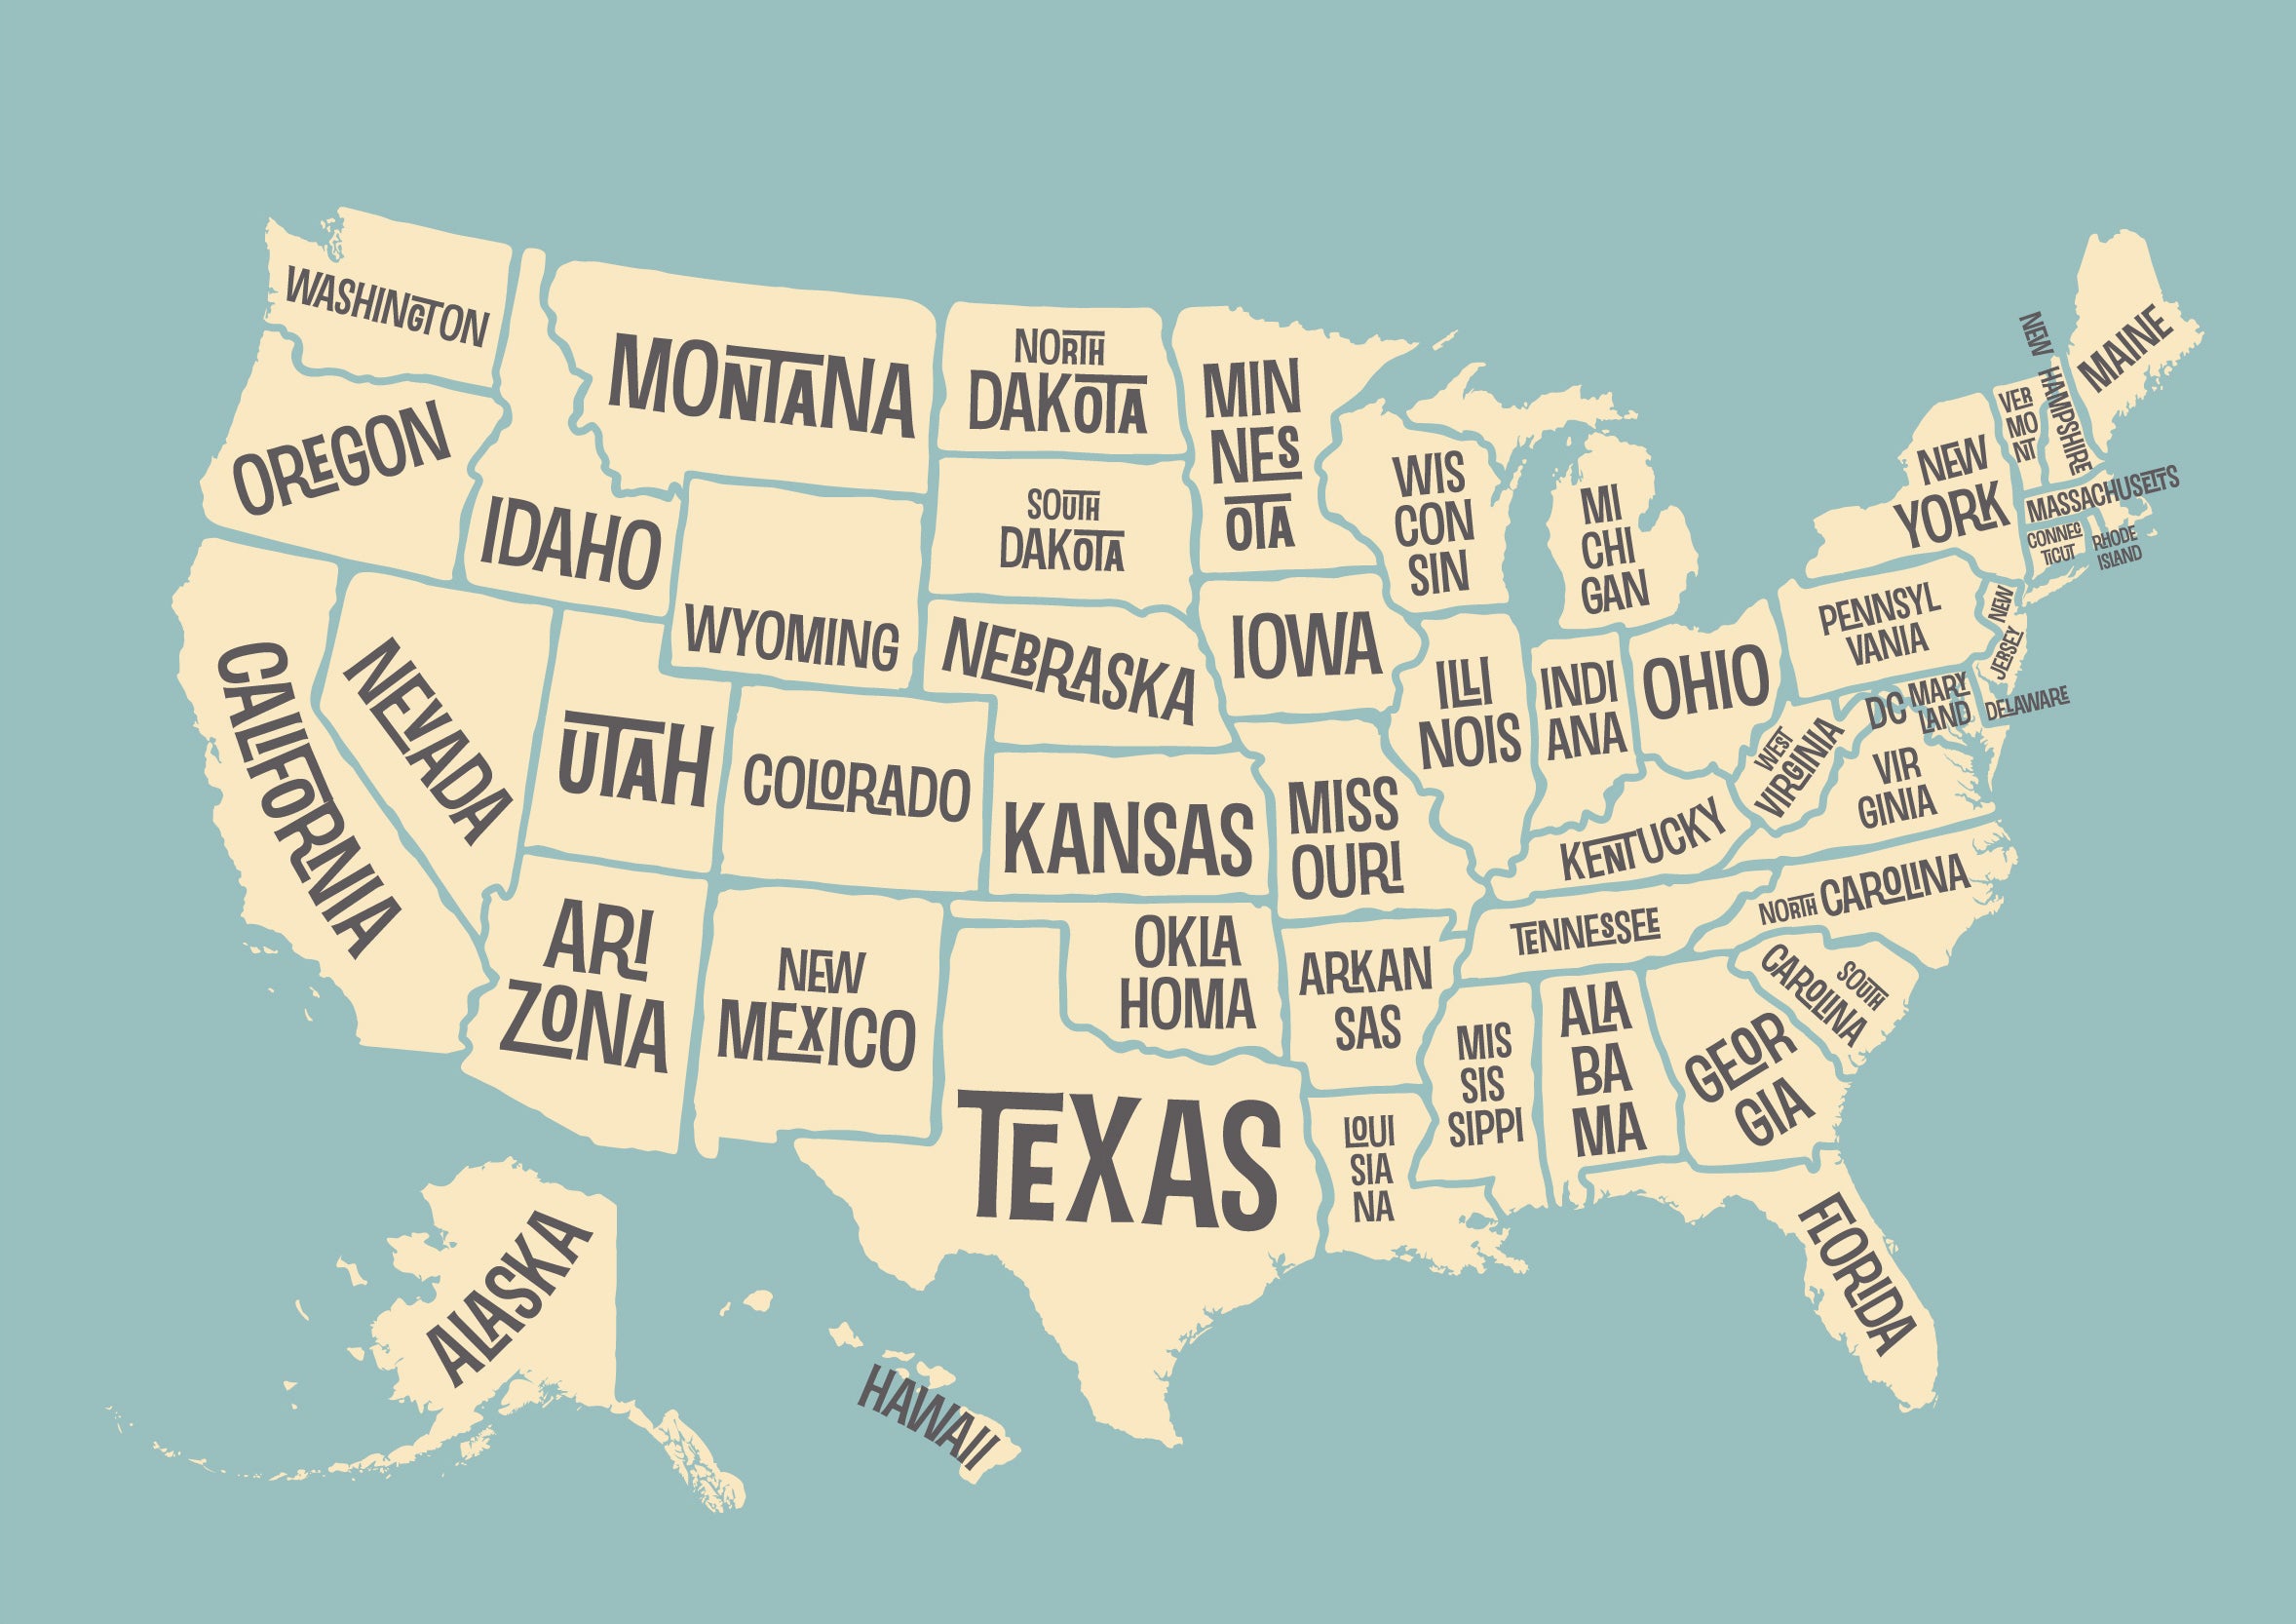 Efrinter - Mural de papel pintado con un mapa vintage de los Estados Unidos